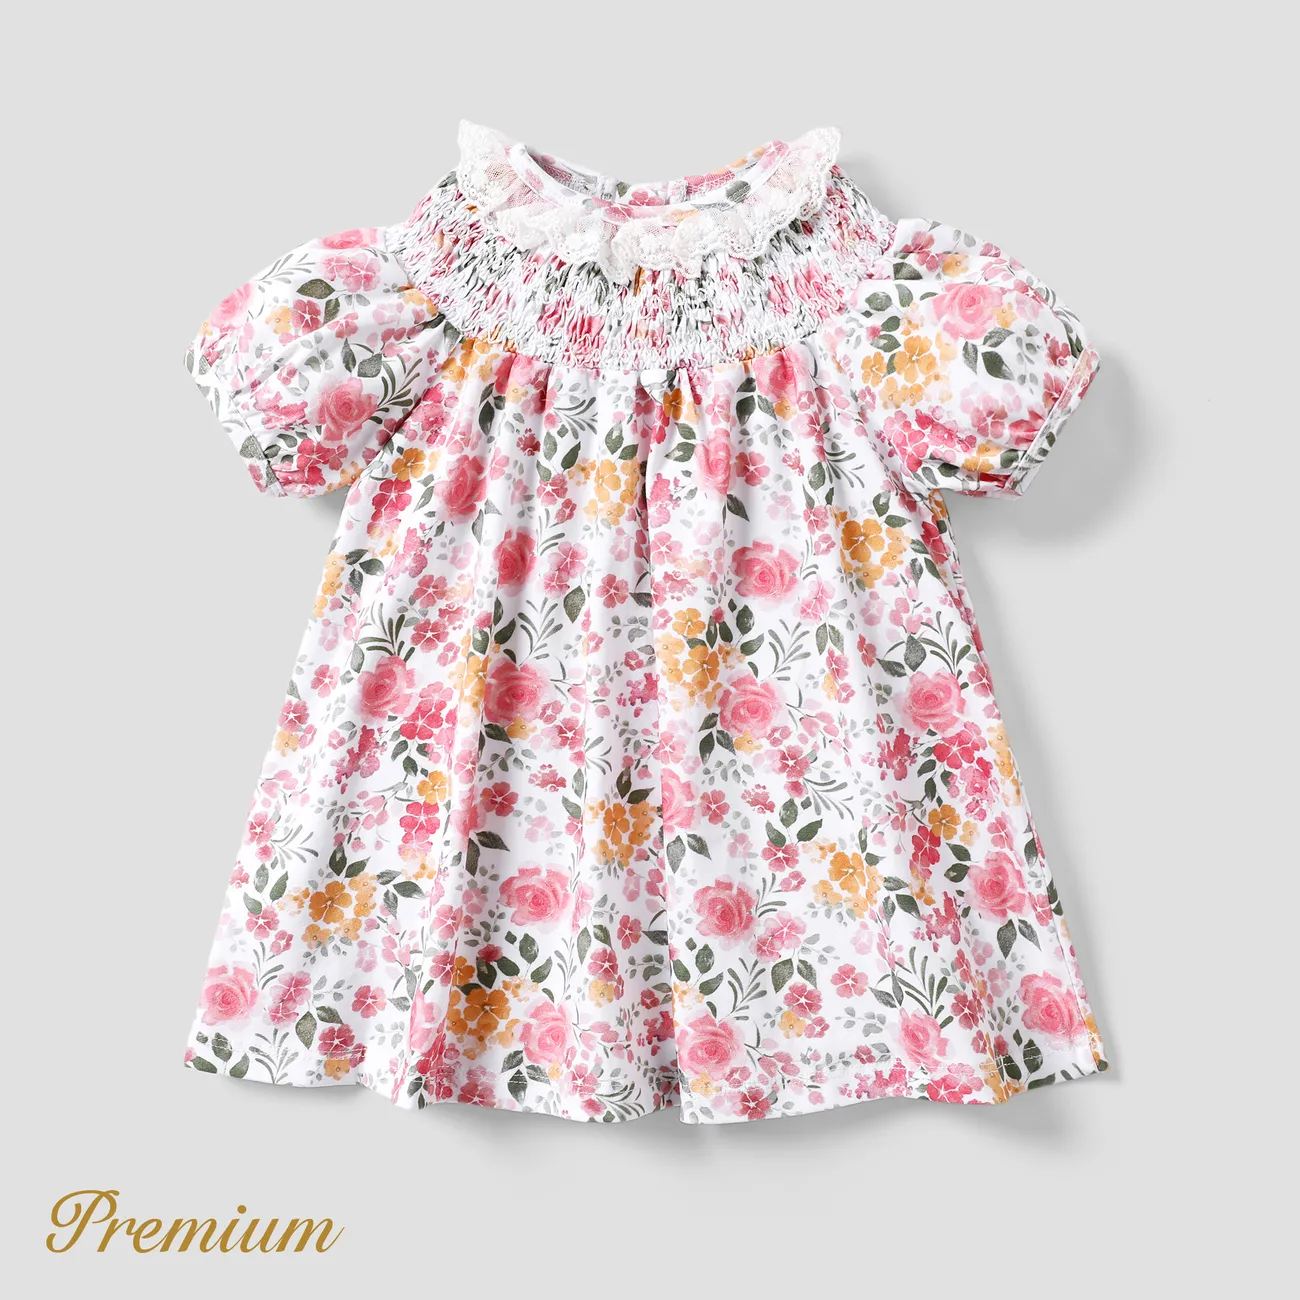 Bebé / niña pequeña Vacaciones vestido elegante fruncido para niñas multicolor big image 1